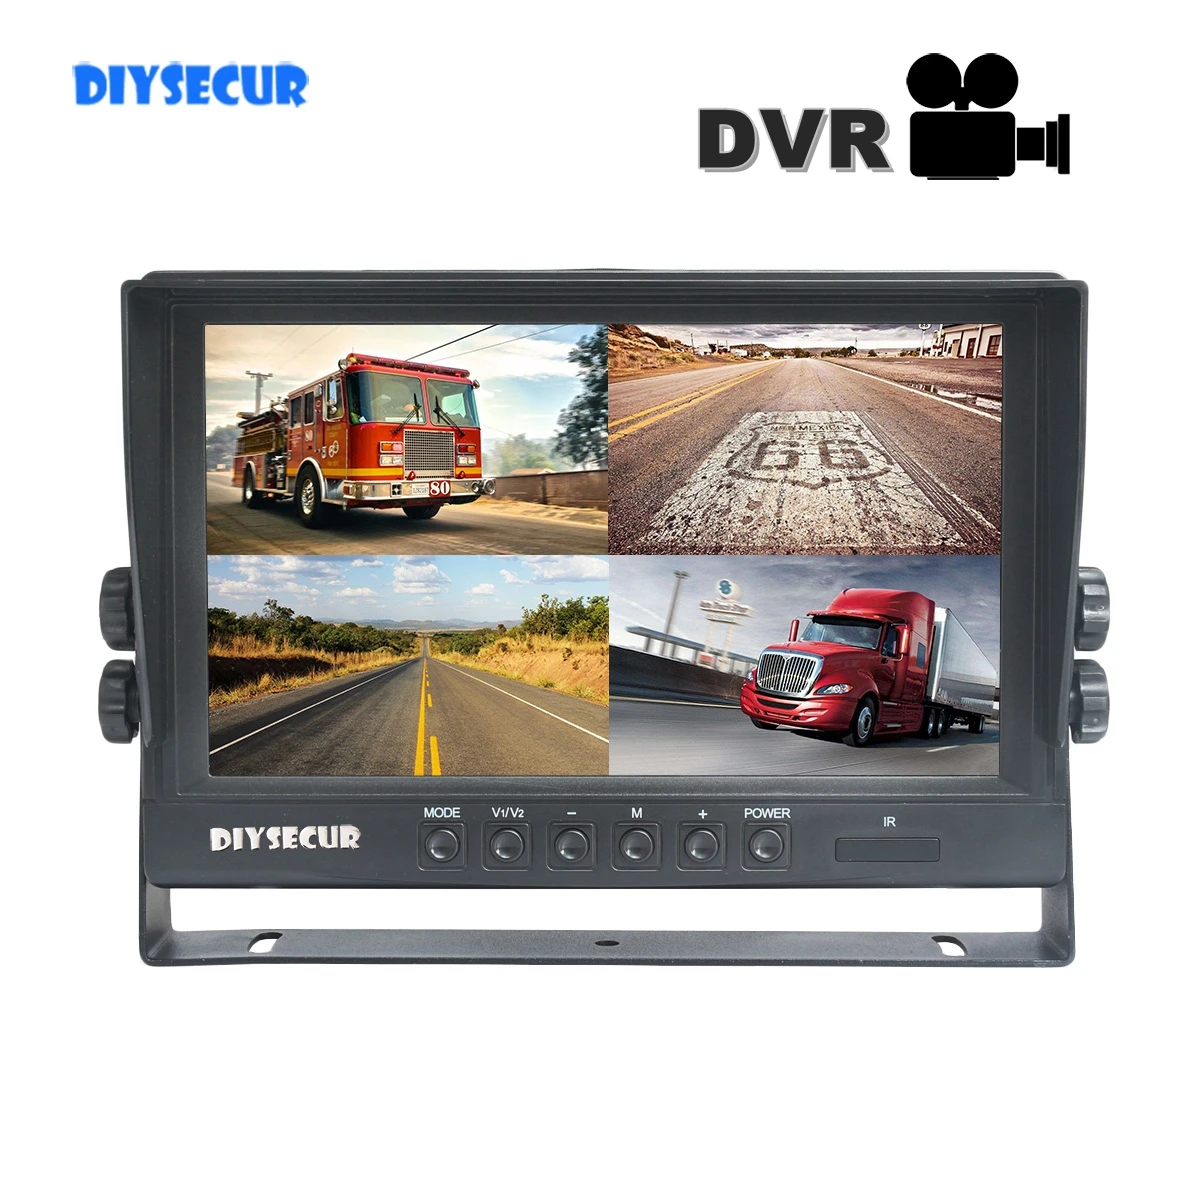 

Автомобильный монитор DIYSECUR, 9 дюймов, AHD IPS 1024x800 HD, монитор заднего вида, поддержка SD-карты 256 ГБ, AHD автомобильная камера, видеозапись